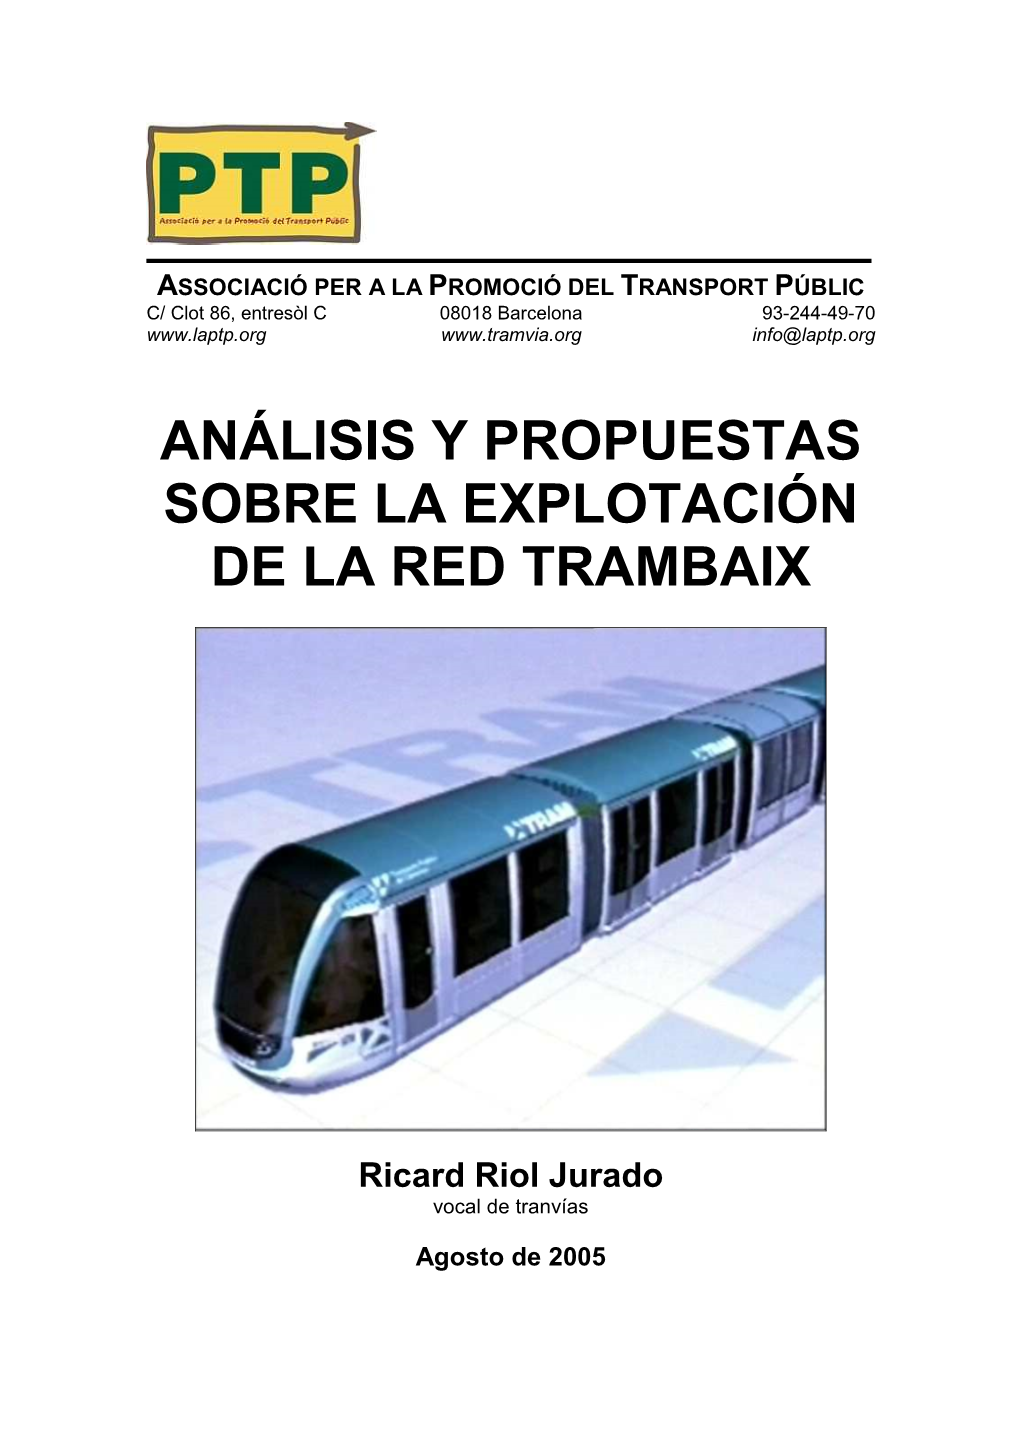 EXPLOTACIÓN DE LA RED TRAMBAIX-Versióweb